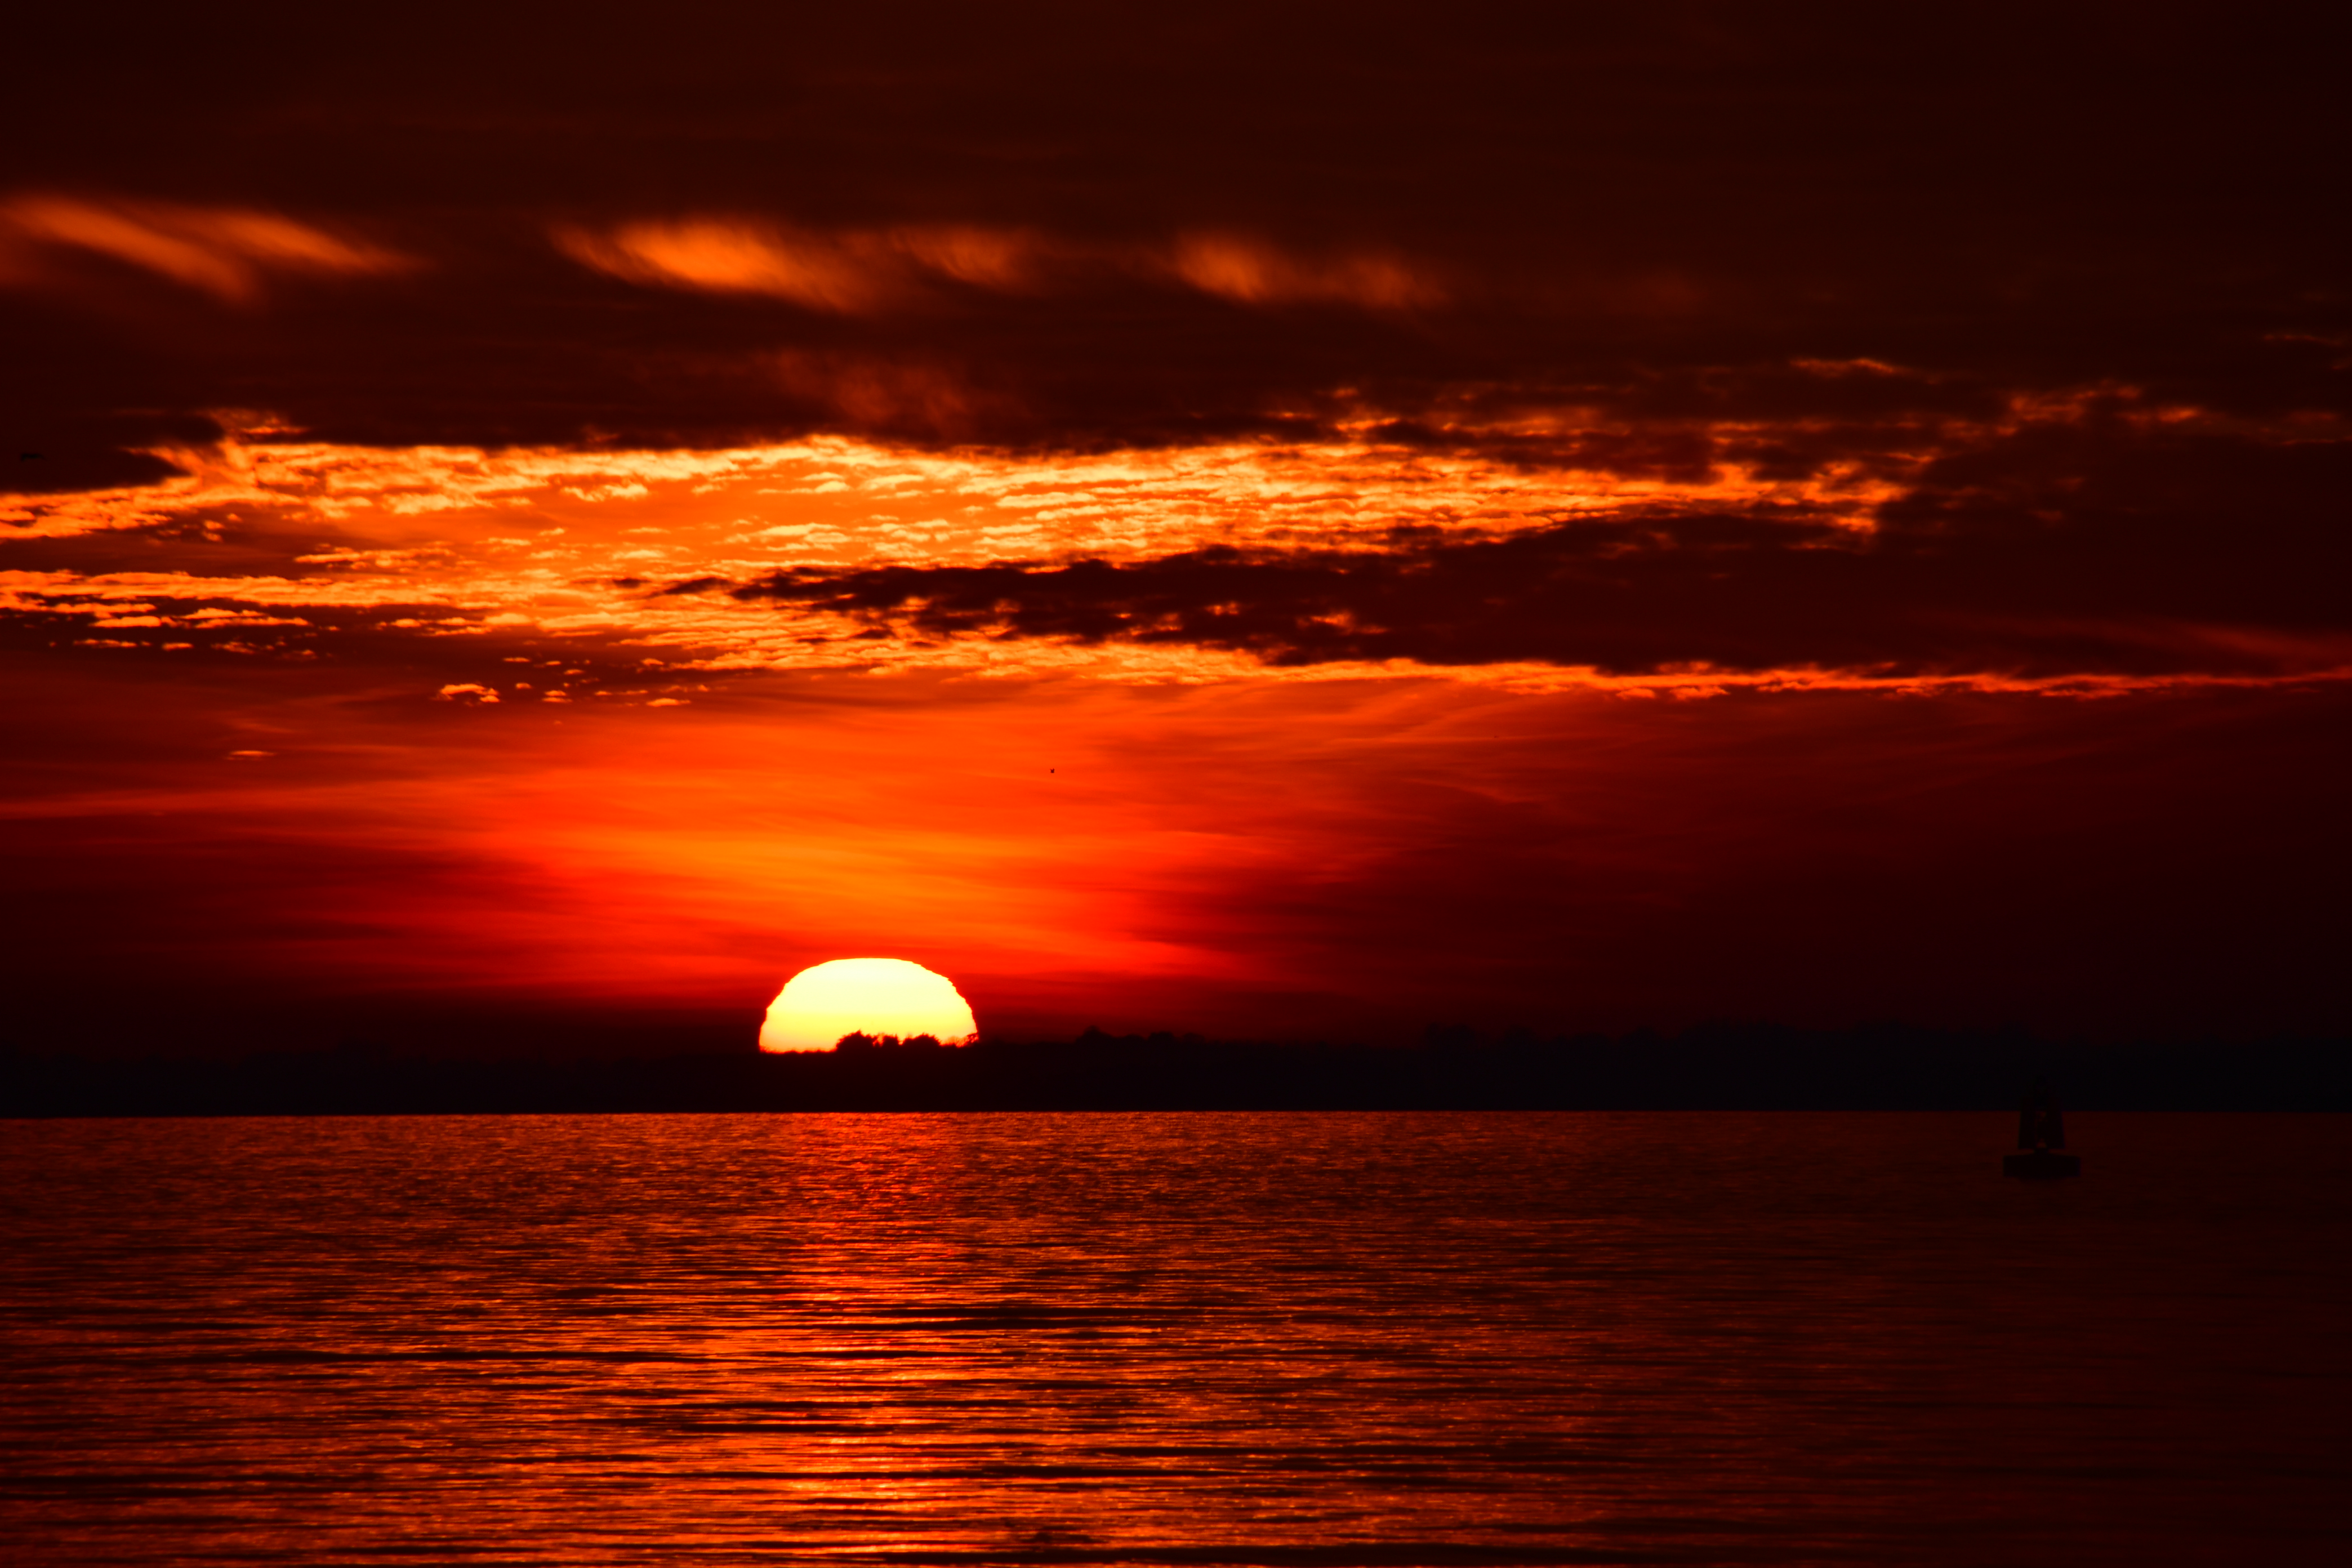 035745-sunset-over-sea-felixstowe-suffolk